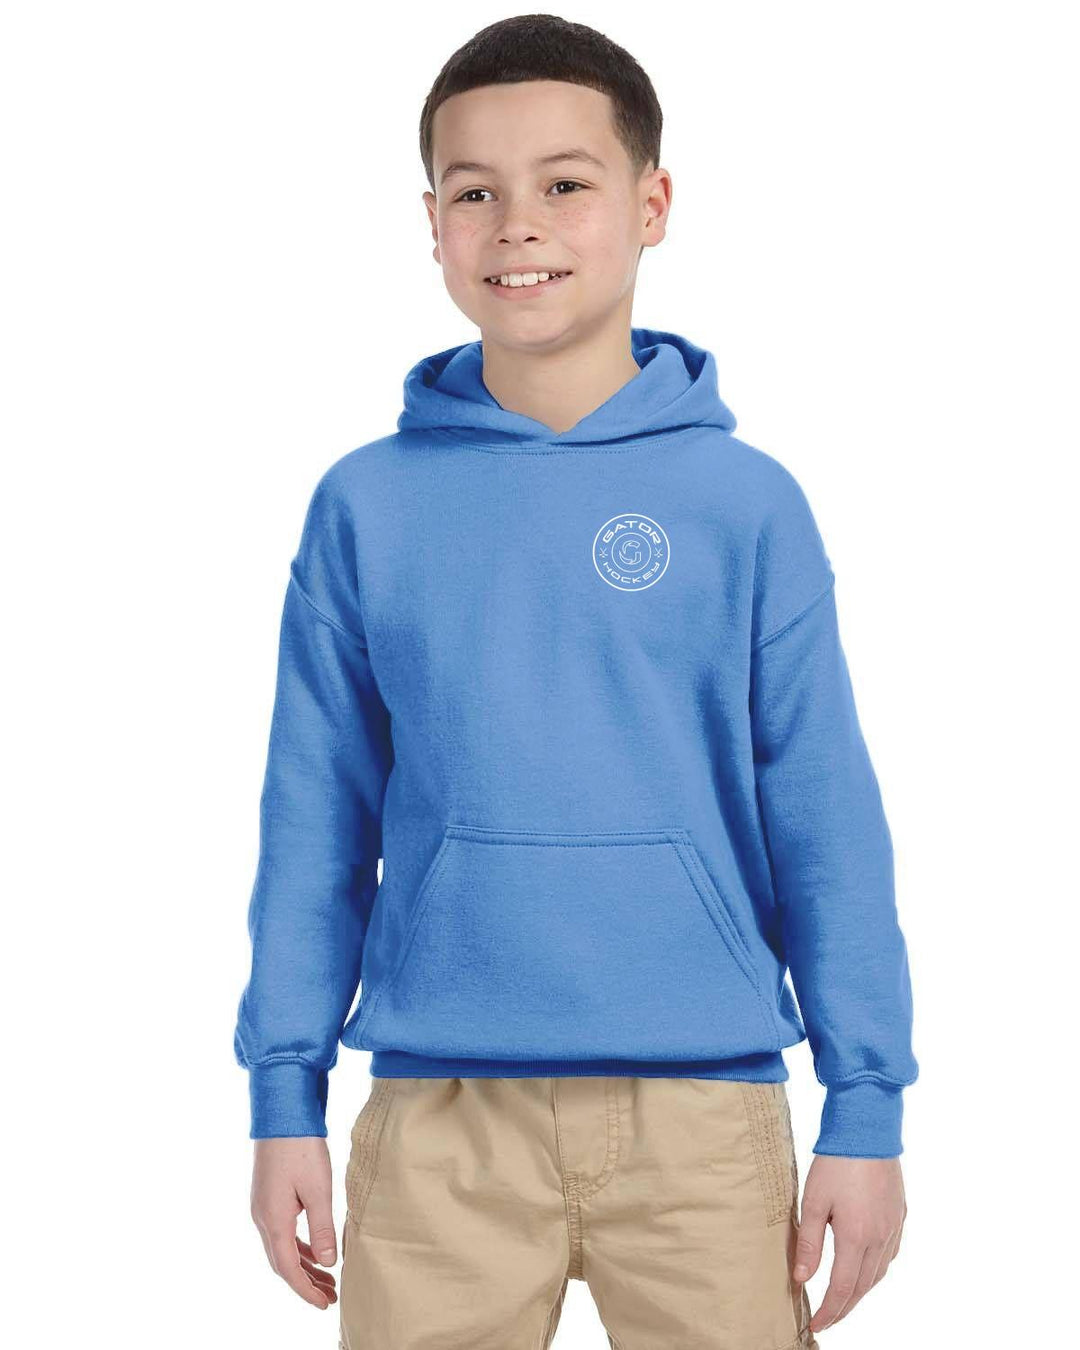 Unisex children's hoodie